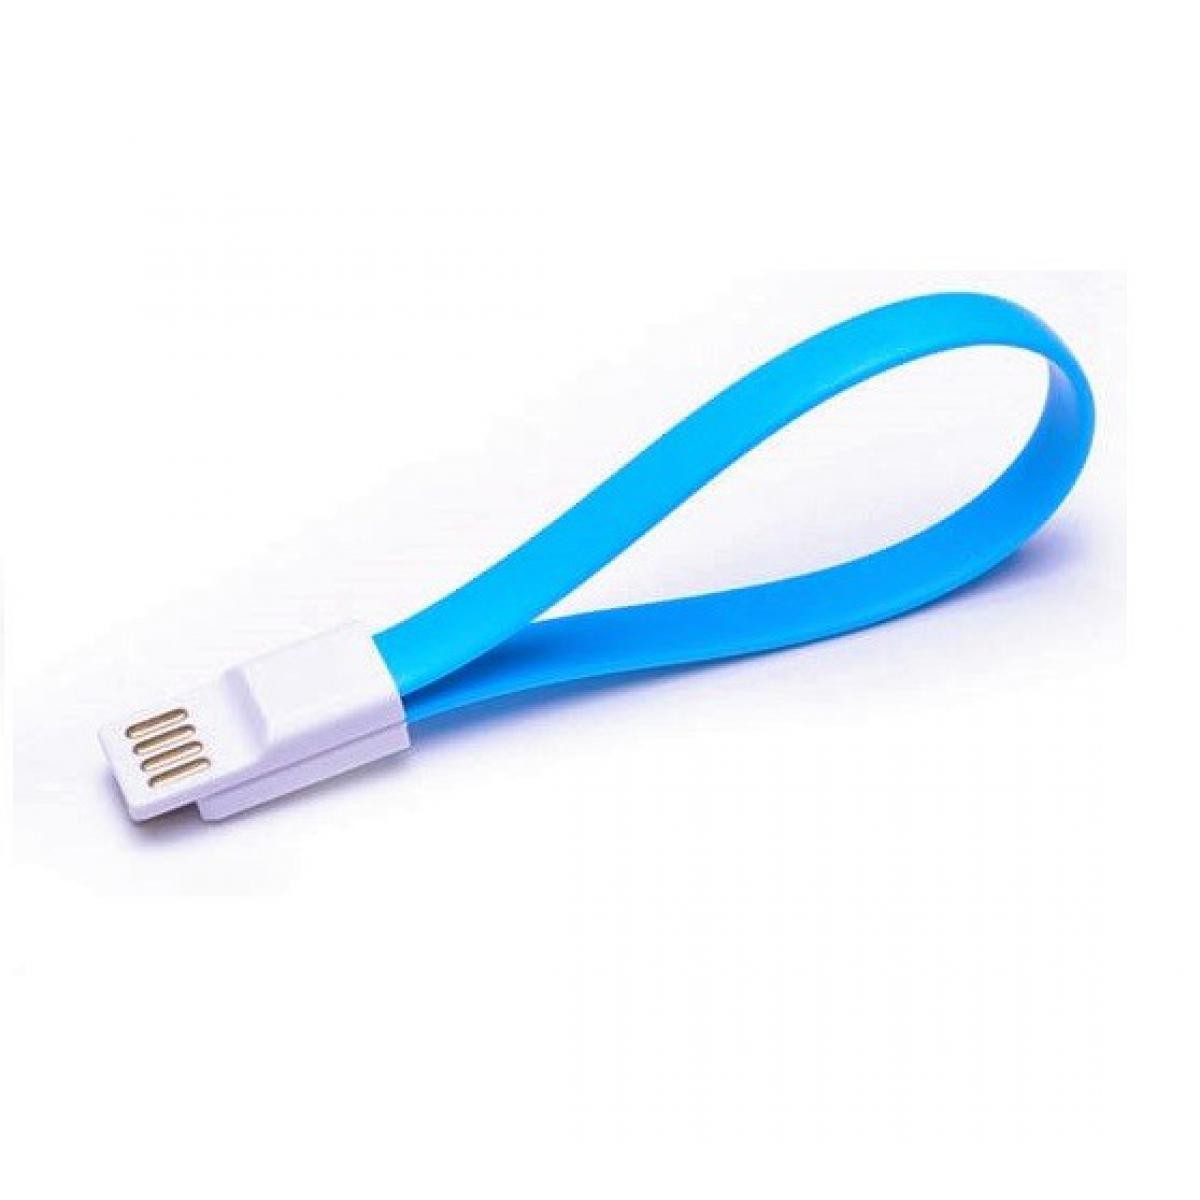 Shot - Mini Cable Aimante pour IPHONE 11 Chargeur Lighting USB APPLE Magnet Porte-Clefs 25cm (BLEU) - Autres accessoires smartphone